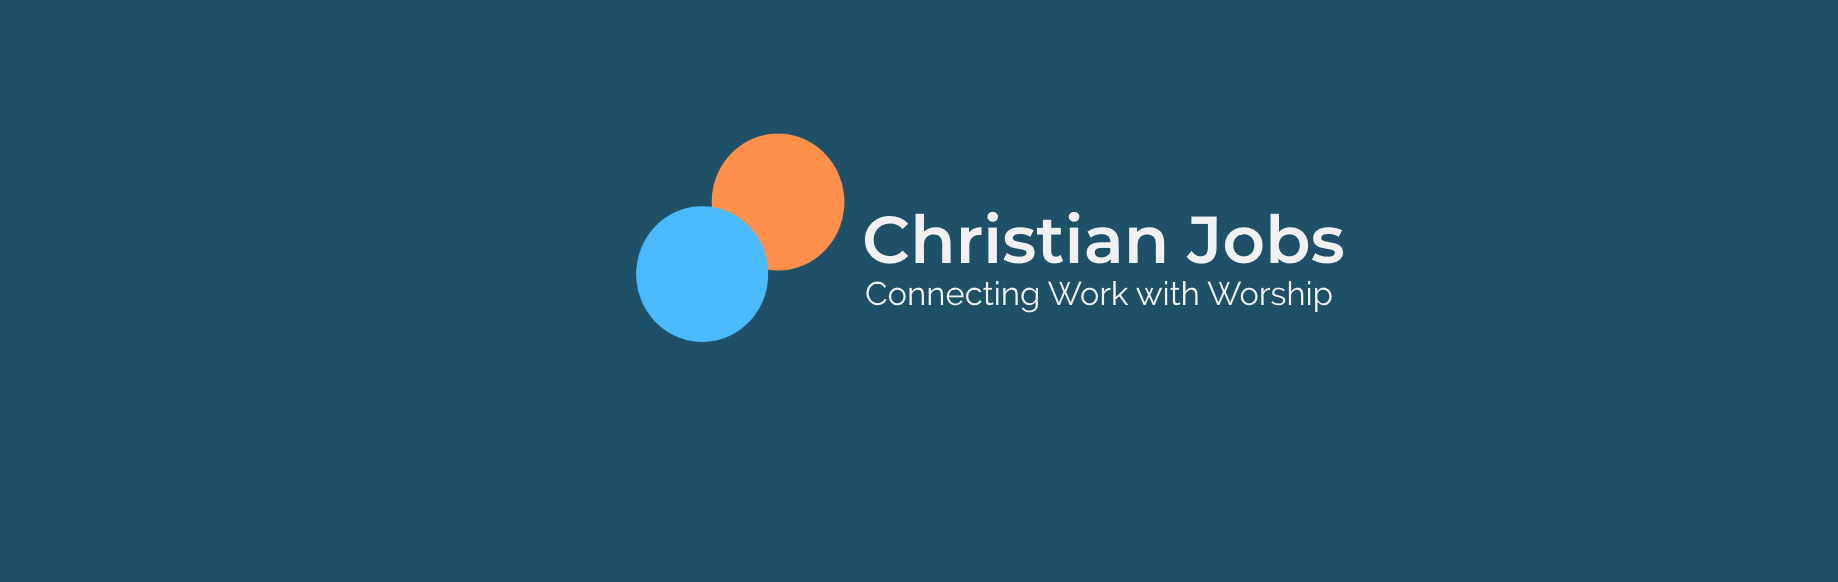 Christian Jobs - Churches, Christian Companies,Tips, Advices